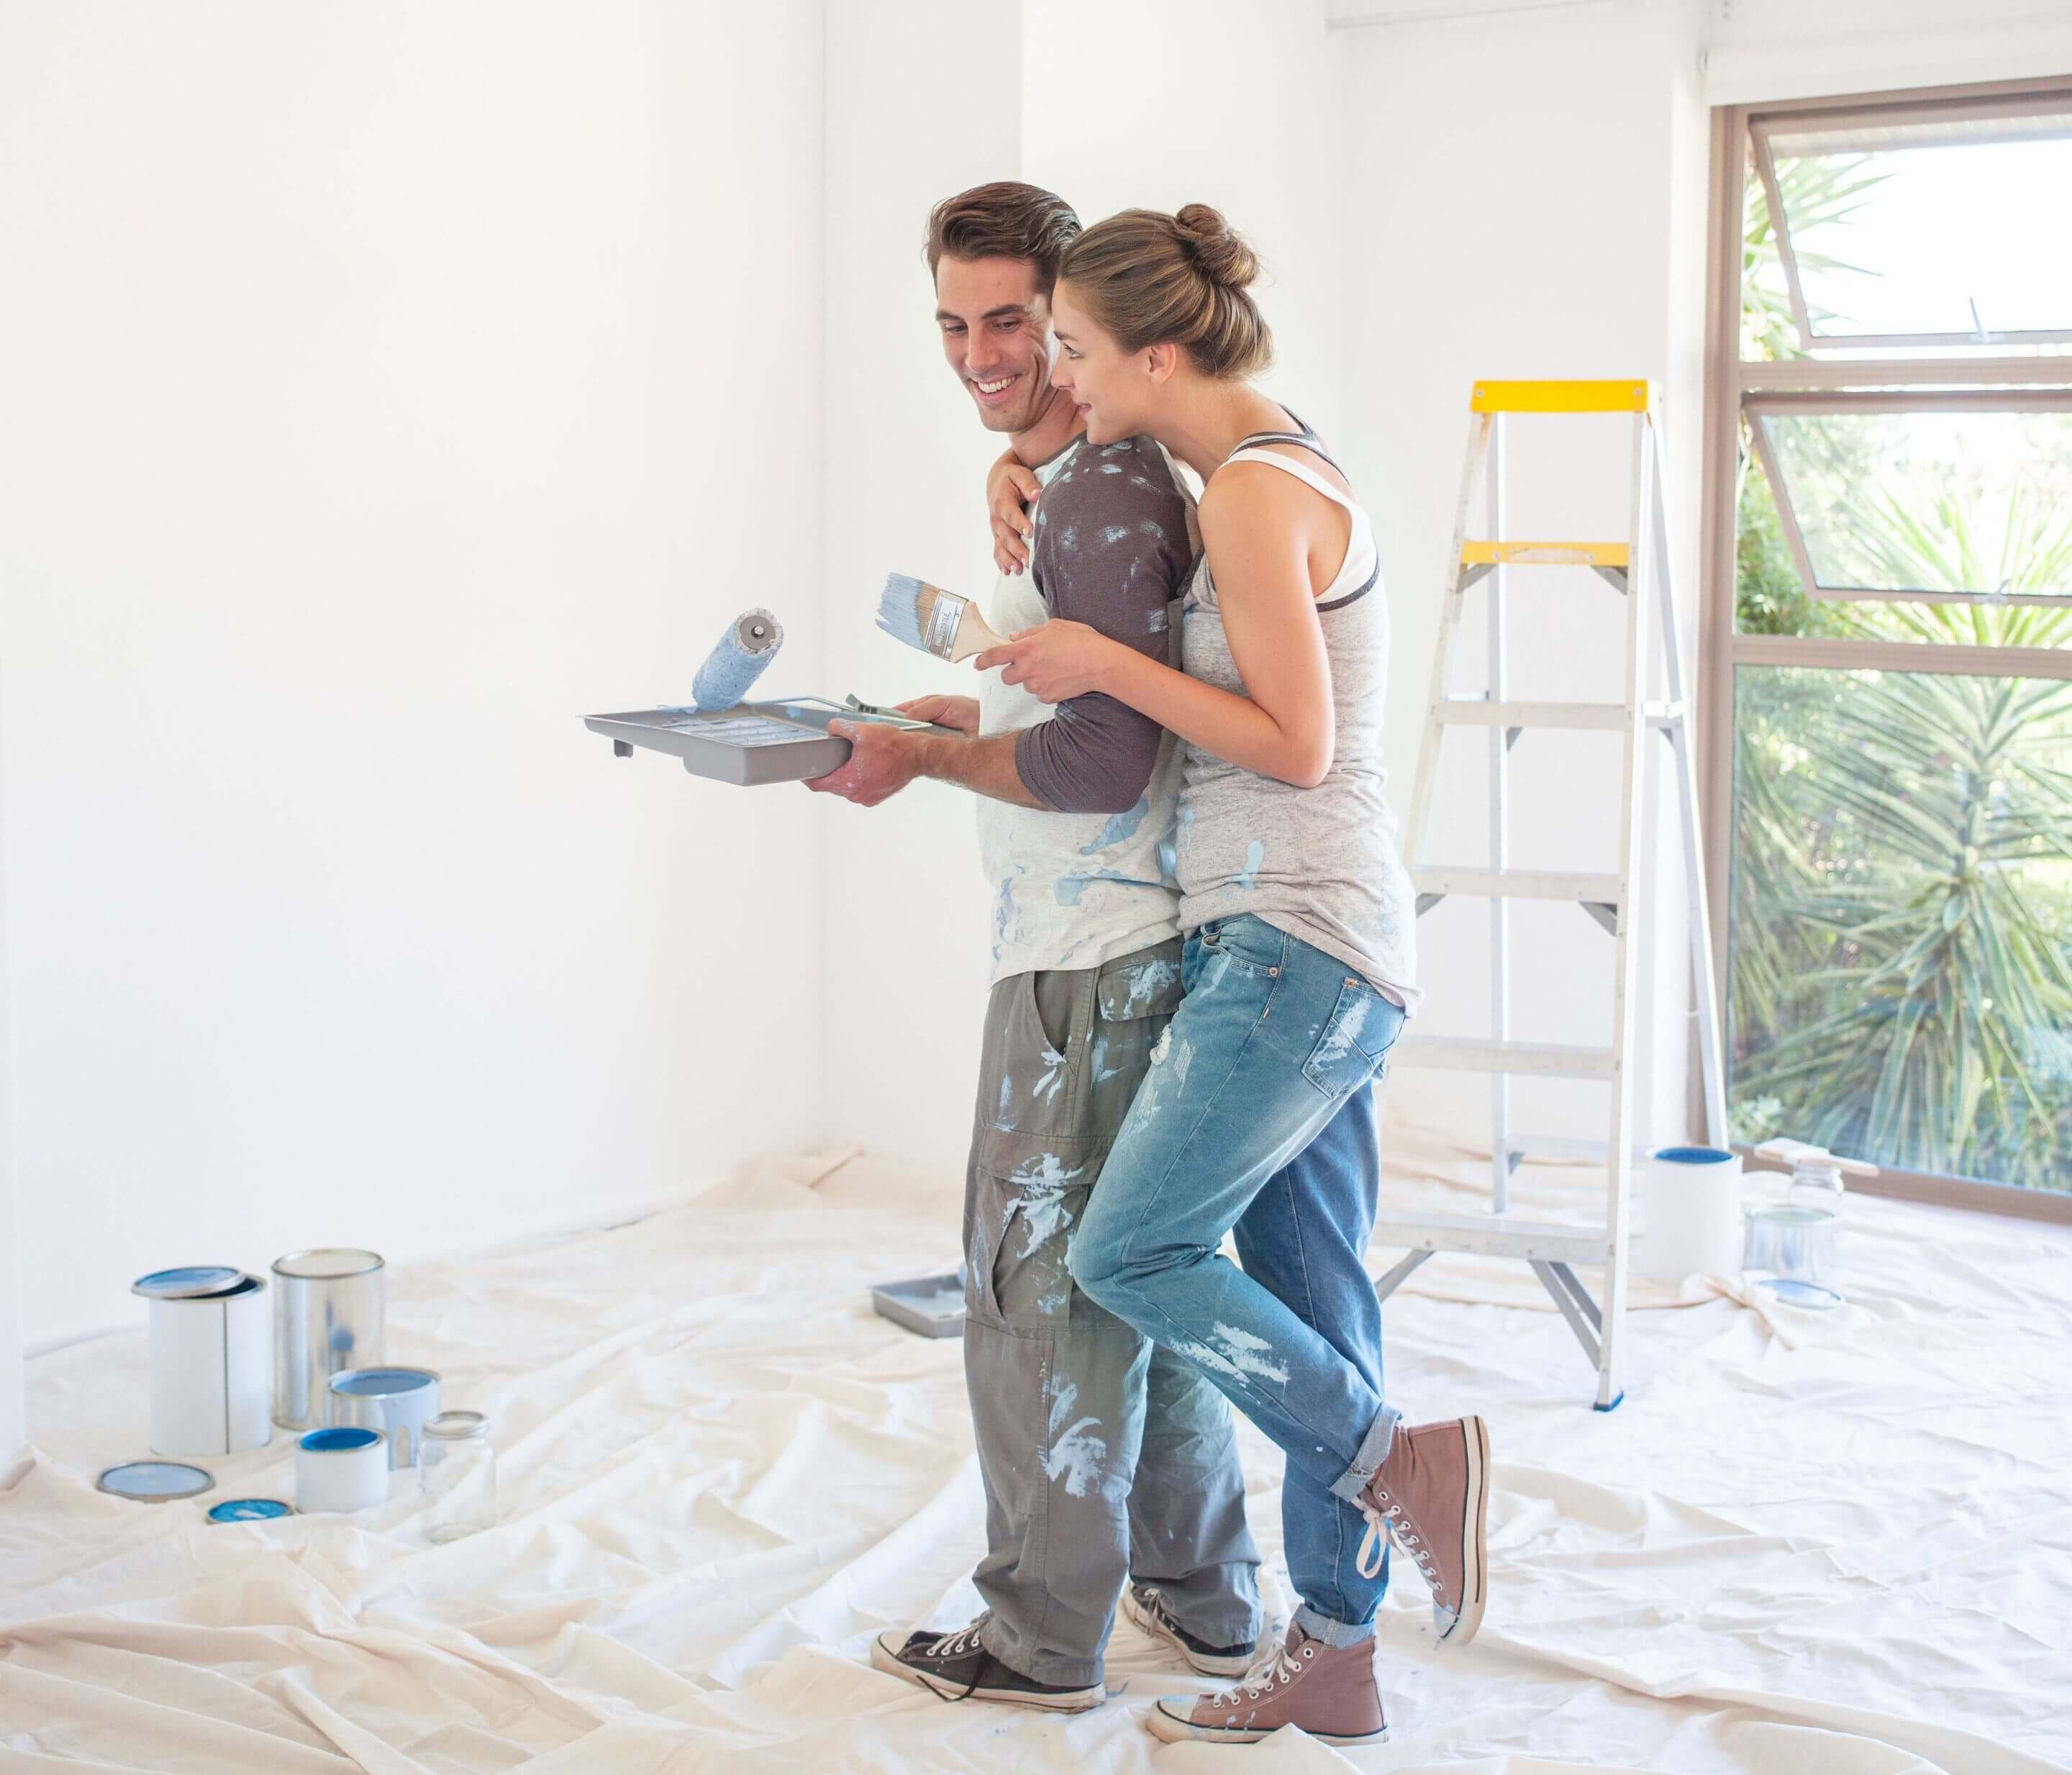 Недорогой ремонт квартиры своими руками: способы экономии и организации работ